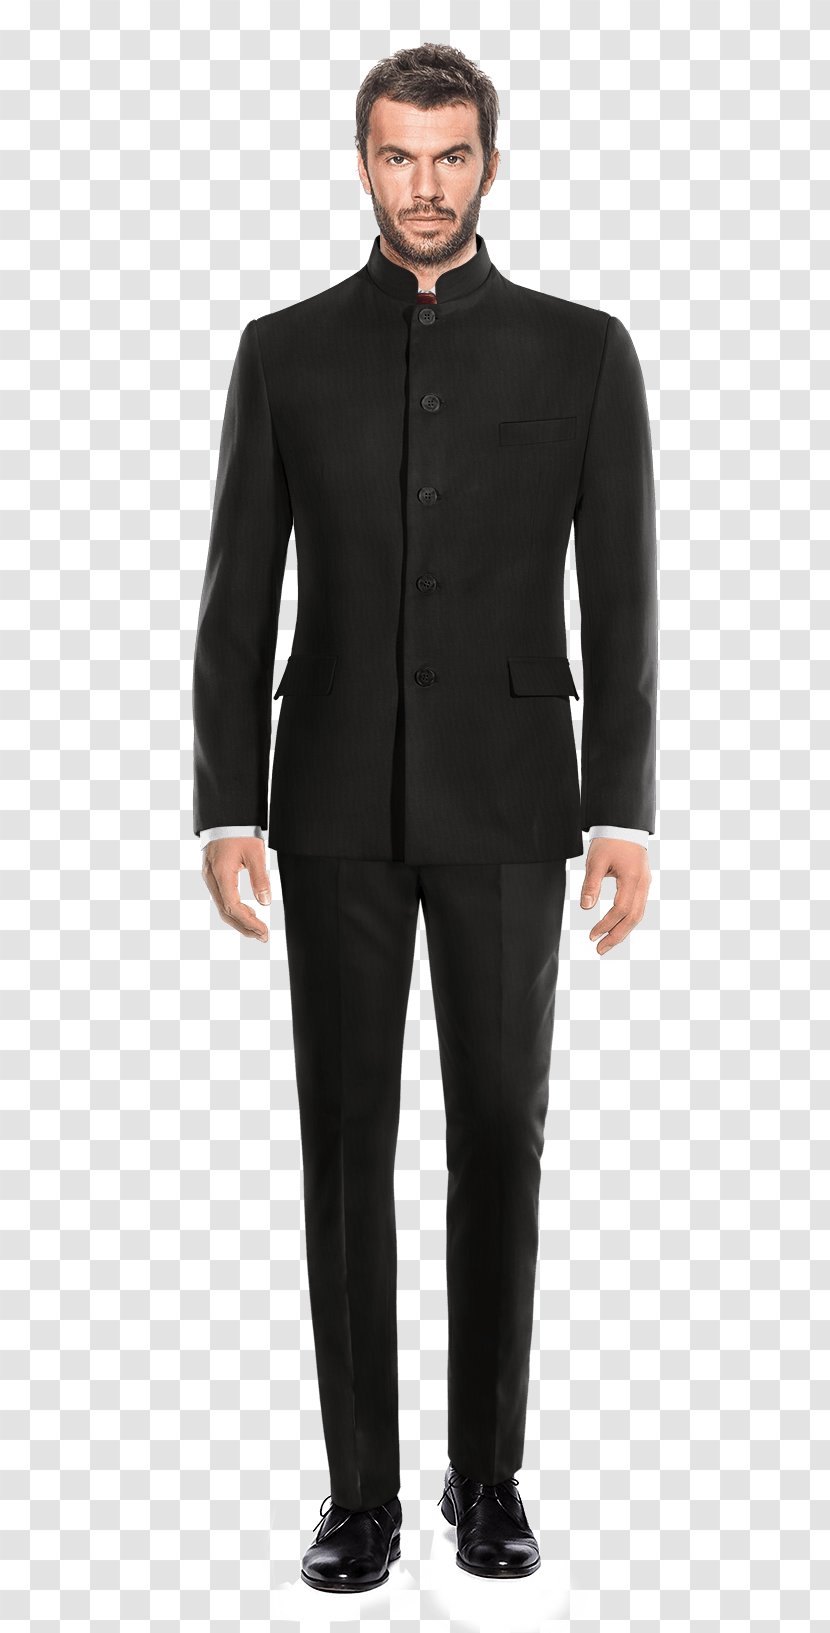 Tuxedo Suit Jacket Lapel Formal Wear - Sleeve Transparent PNG